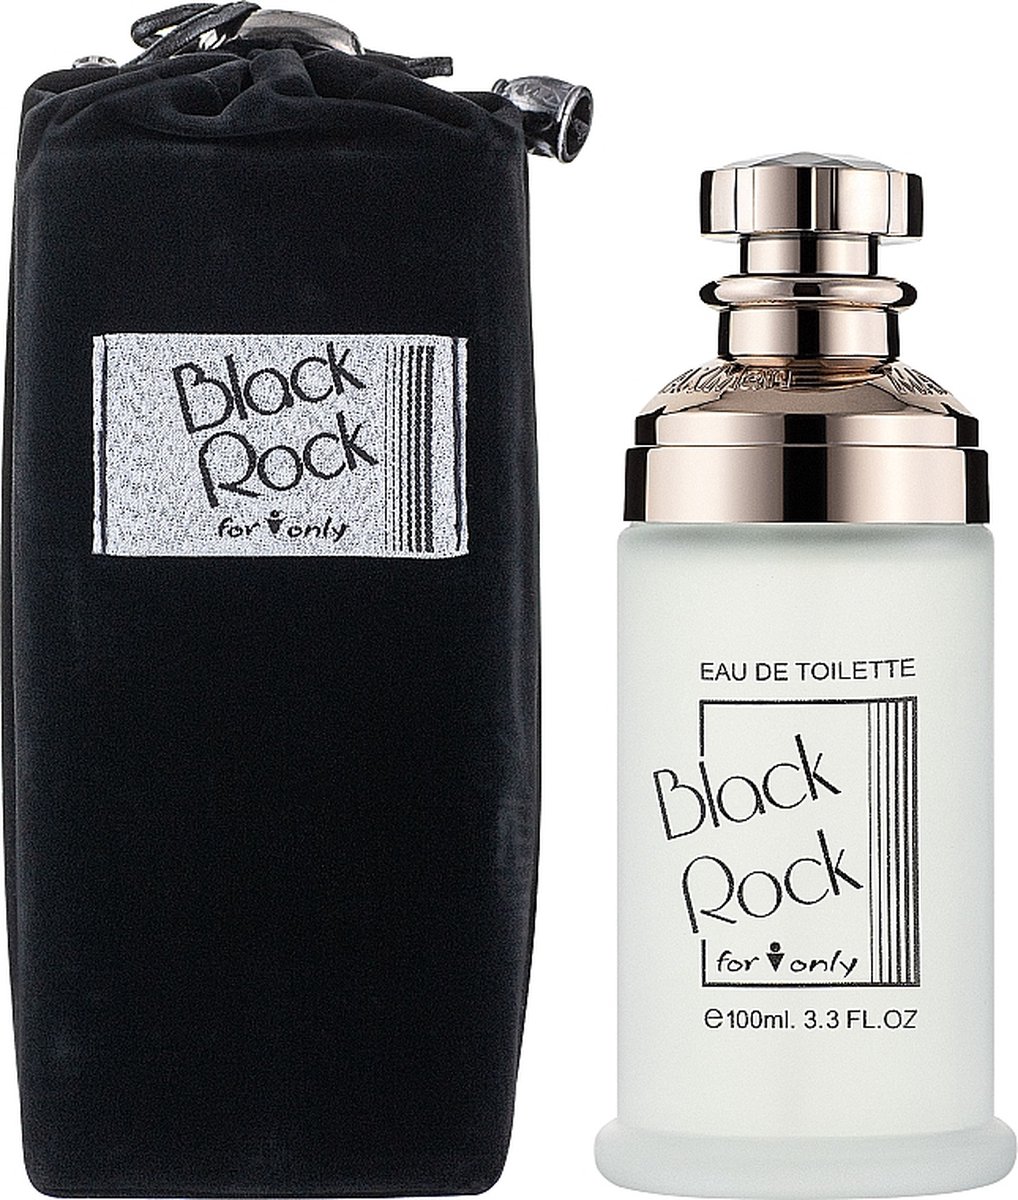 Black Rock for men onley een heerlijke Houtige geur met Sandelhout en Musk.